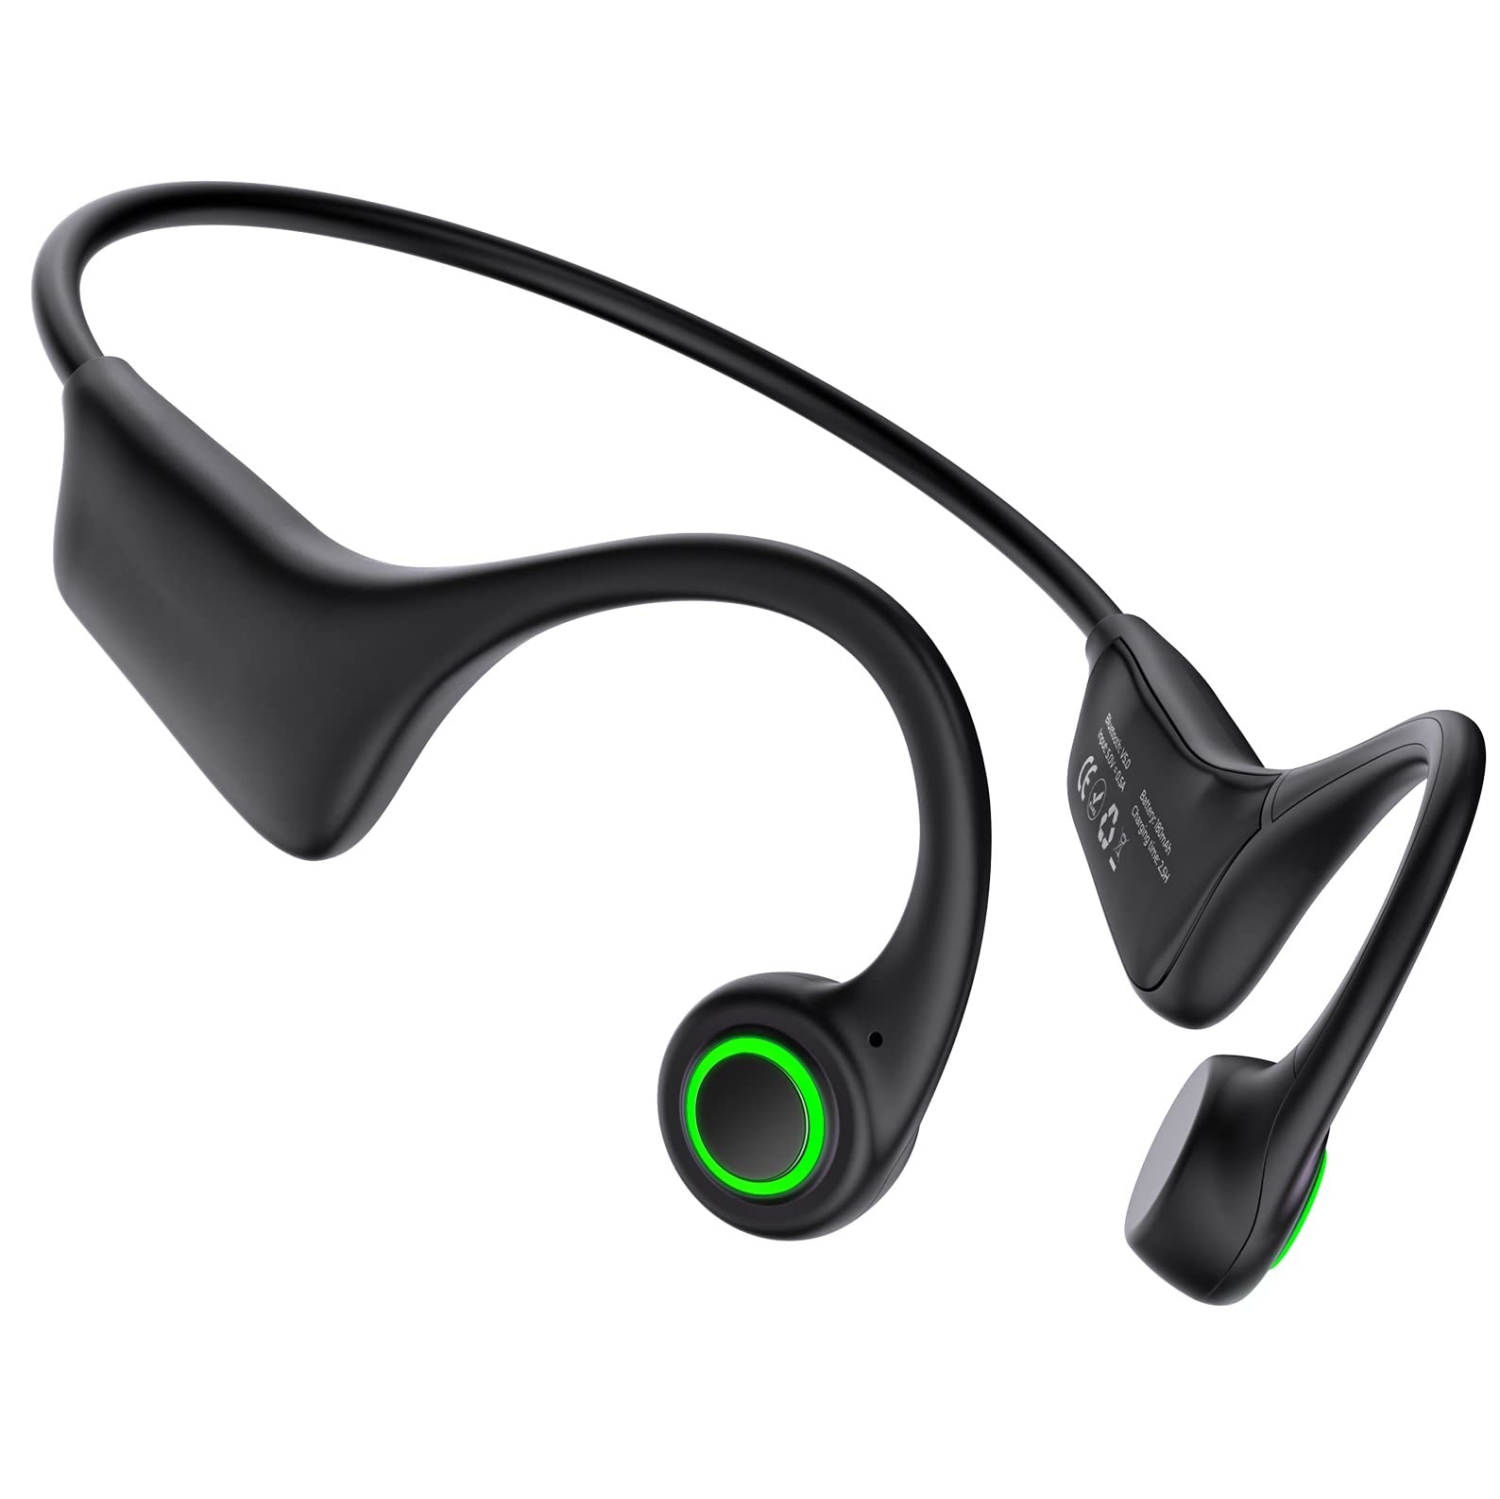 Bone Conduction Headphones, Running Headphones Open Ear Headphones with Cool Smart Breathing Light, IPX7 Waterproof Sweatproof Workout Headphones Built-in Mic for Sport, Running